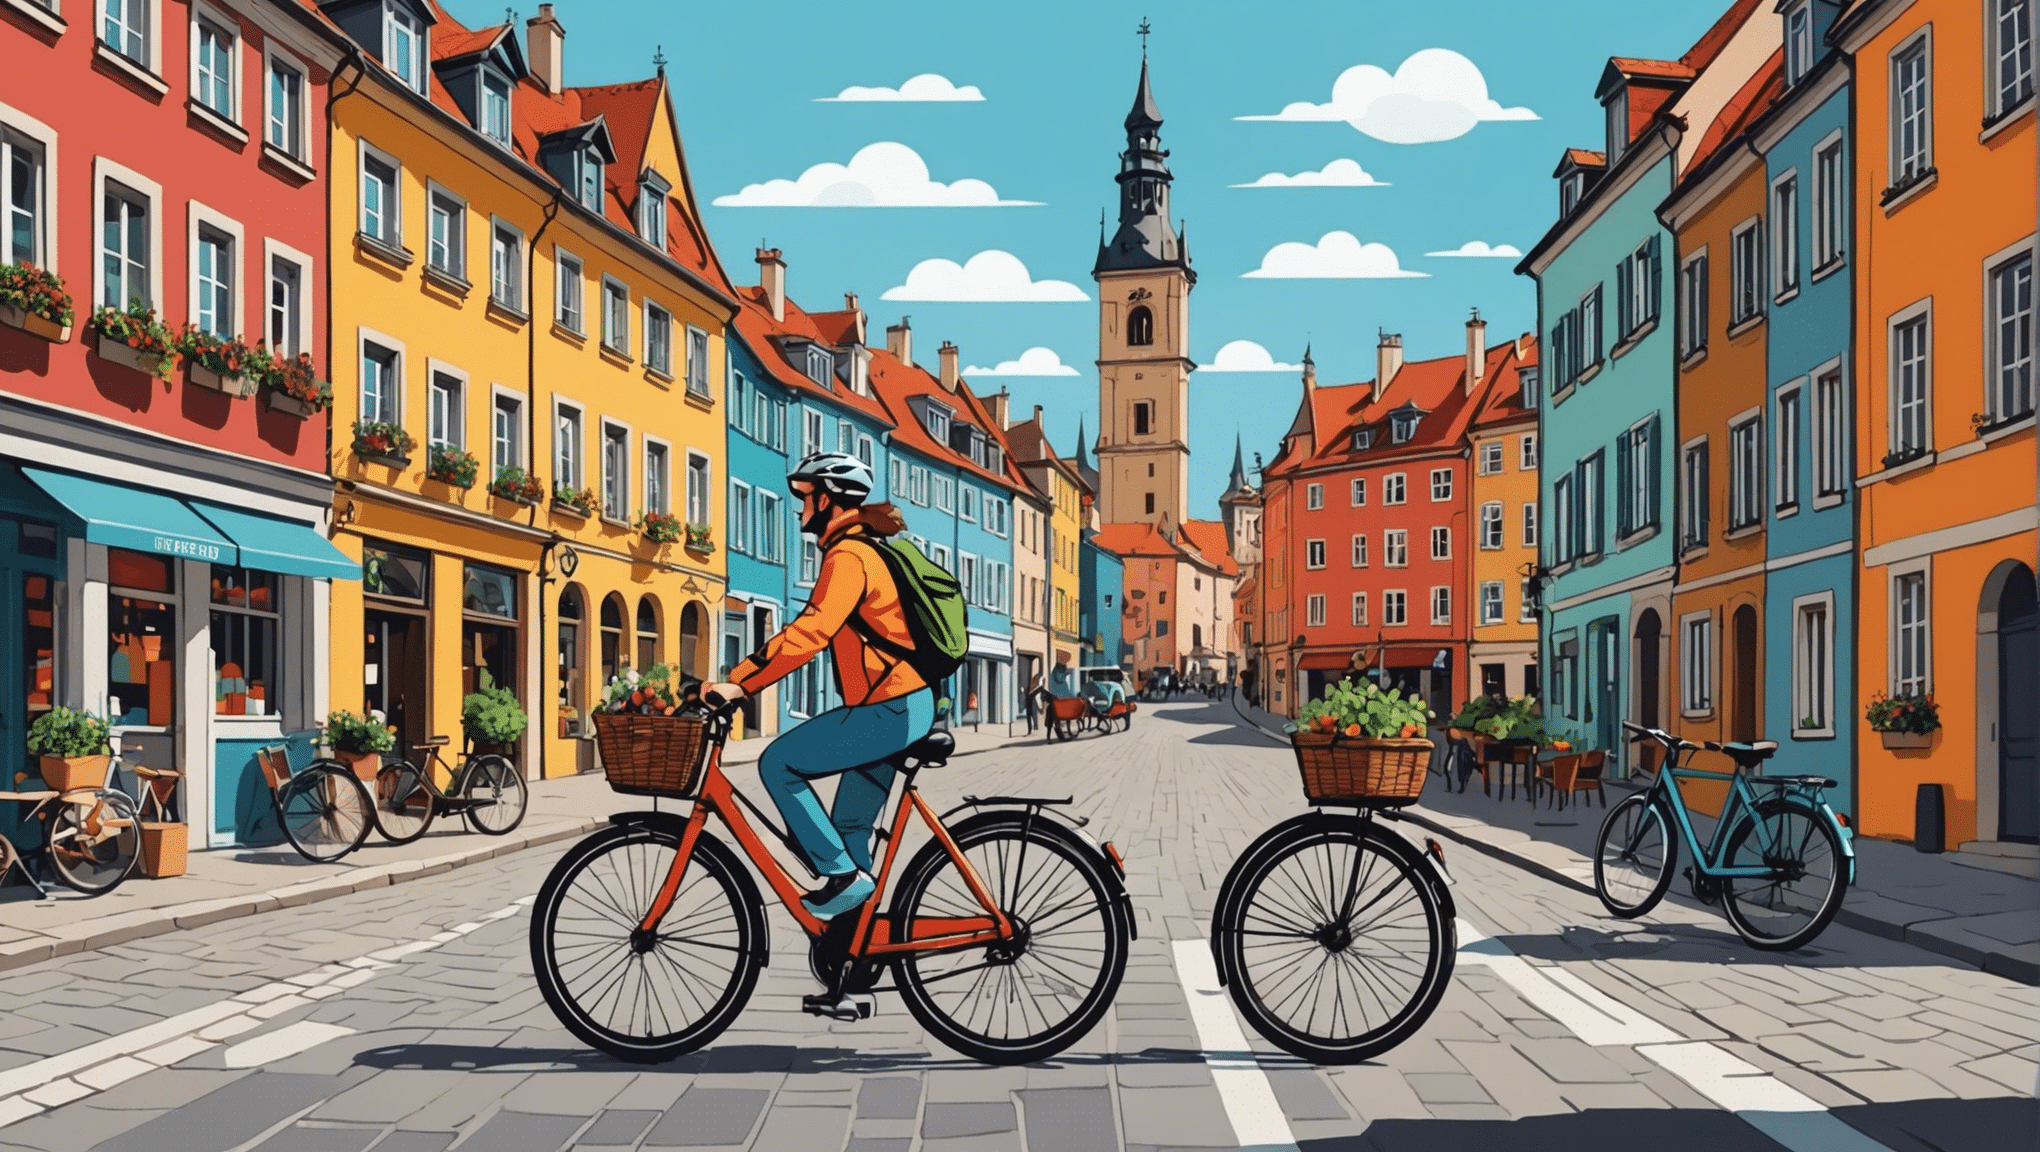 découvrez les destinations incontournables pour les amateurs de voyages à vélo en europe. explorez le continent à vélo et vivez une expérience unique.